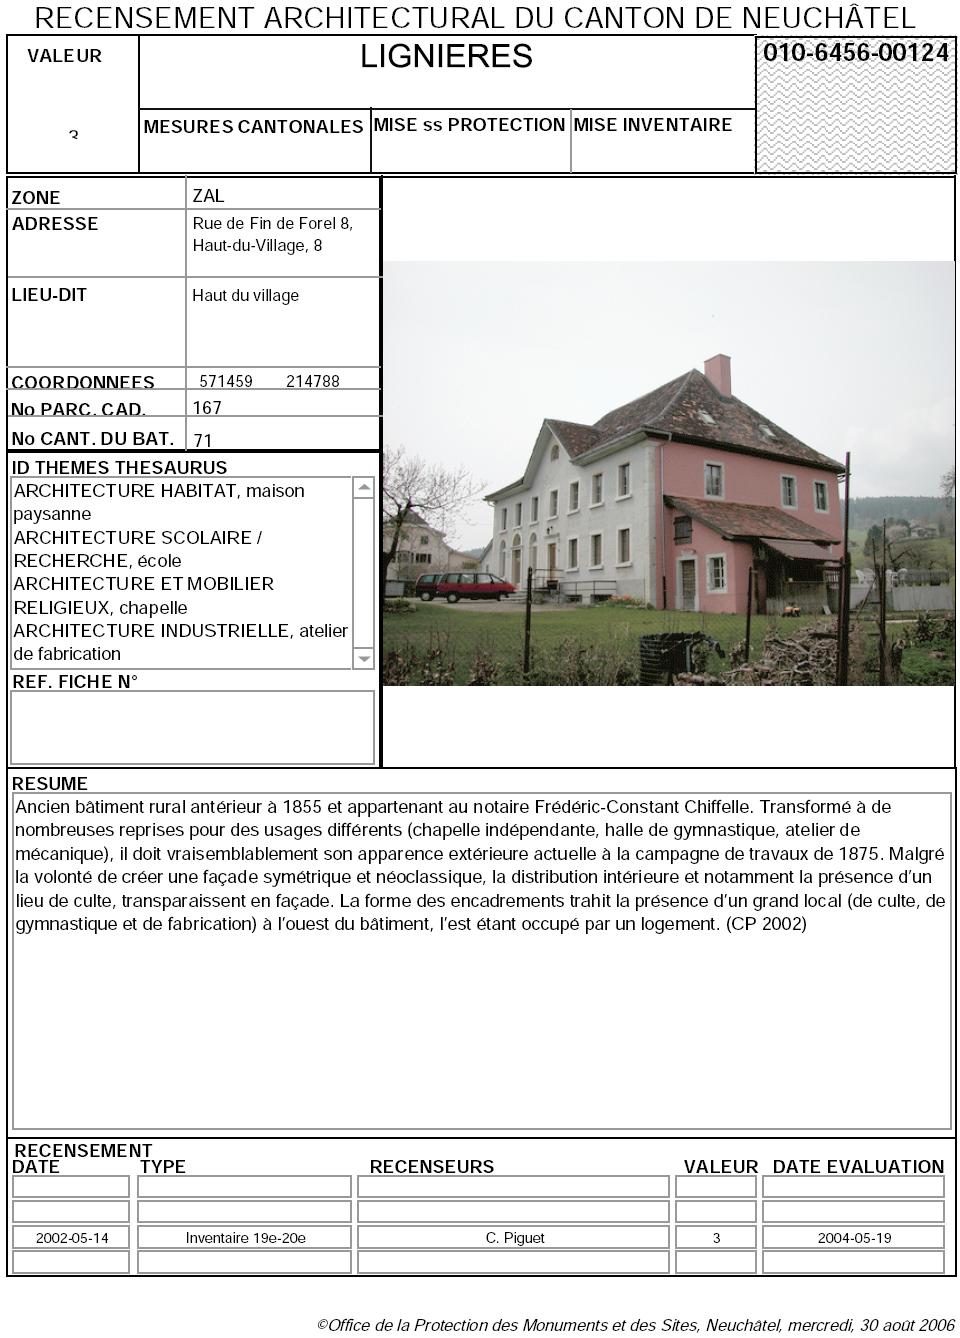 Recensement architectural du canton de Neuchâtel: Fiche 010-6456-00124